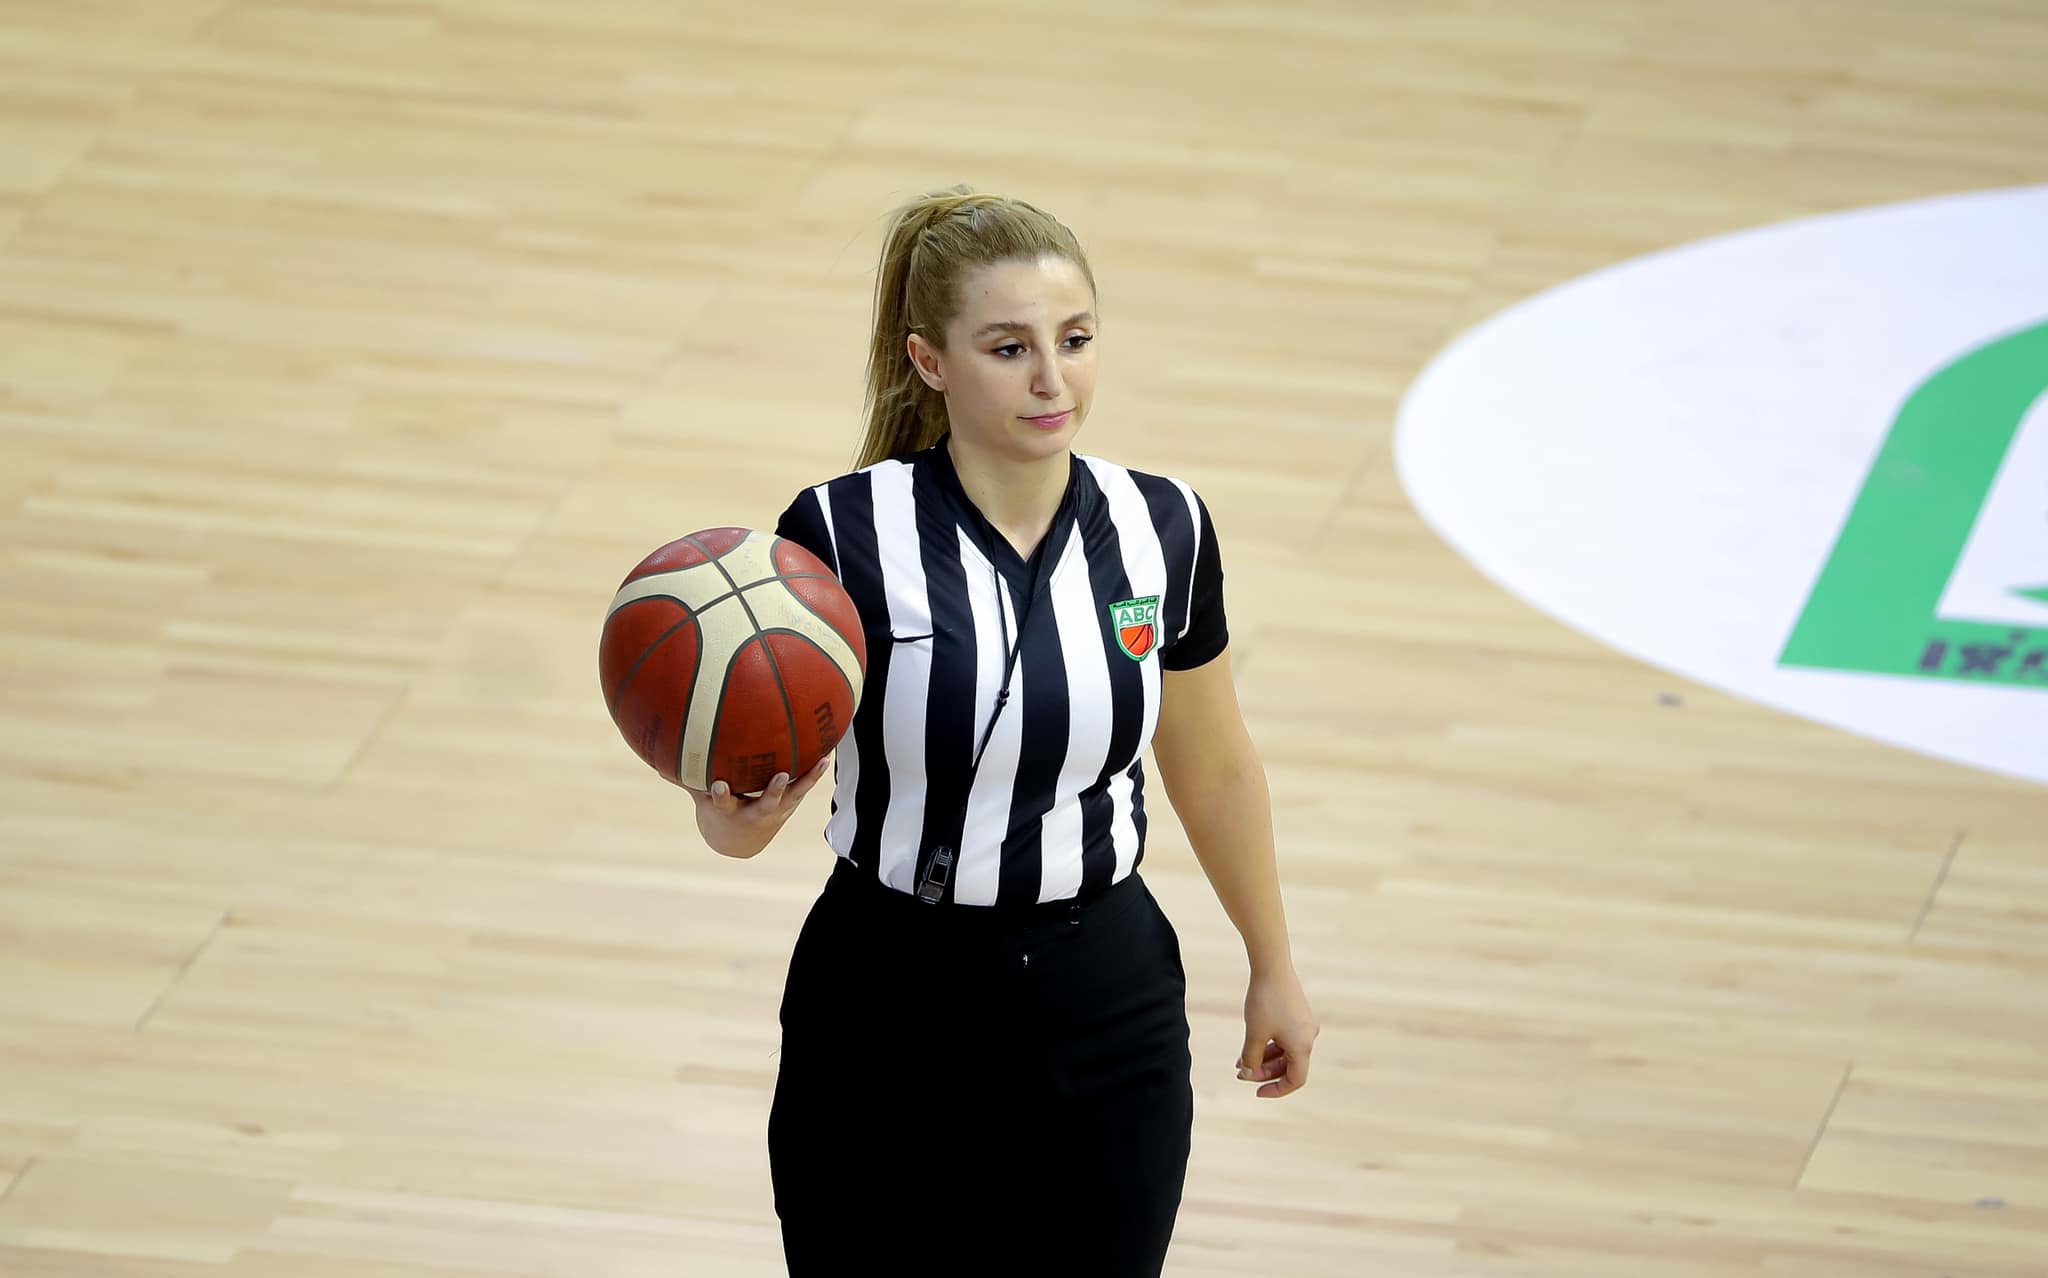 Championnat Arabe des Nations de Basket-ball / Arbitrage:  Asmae Benkhadra, une Marocaine en match d’ouverture !